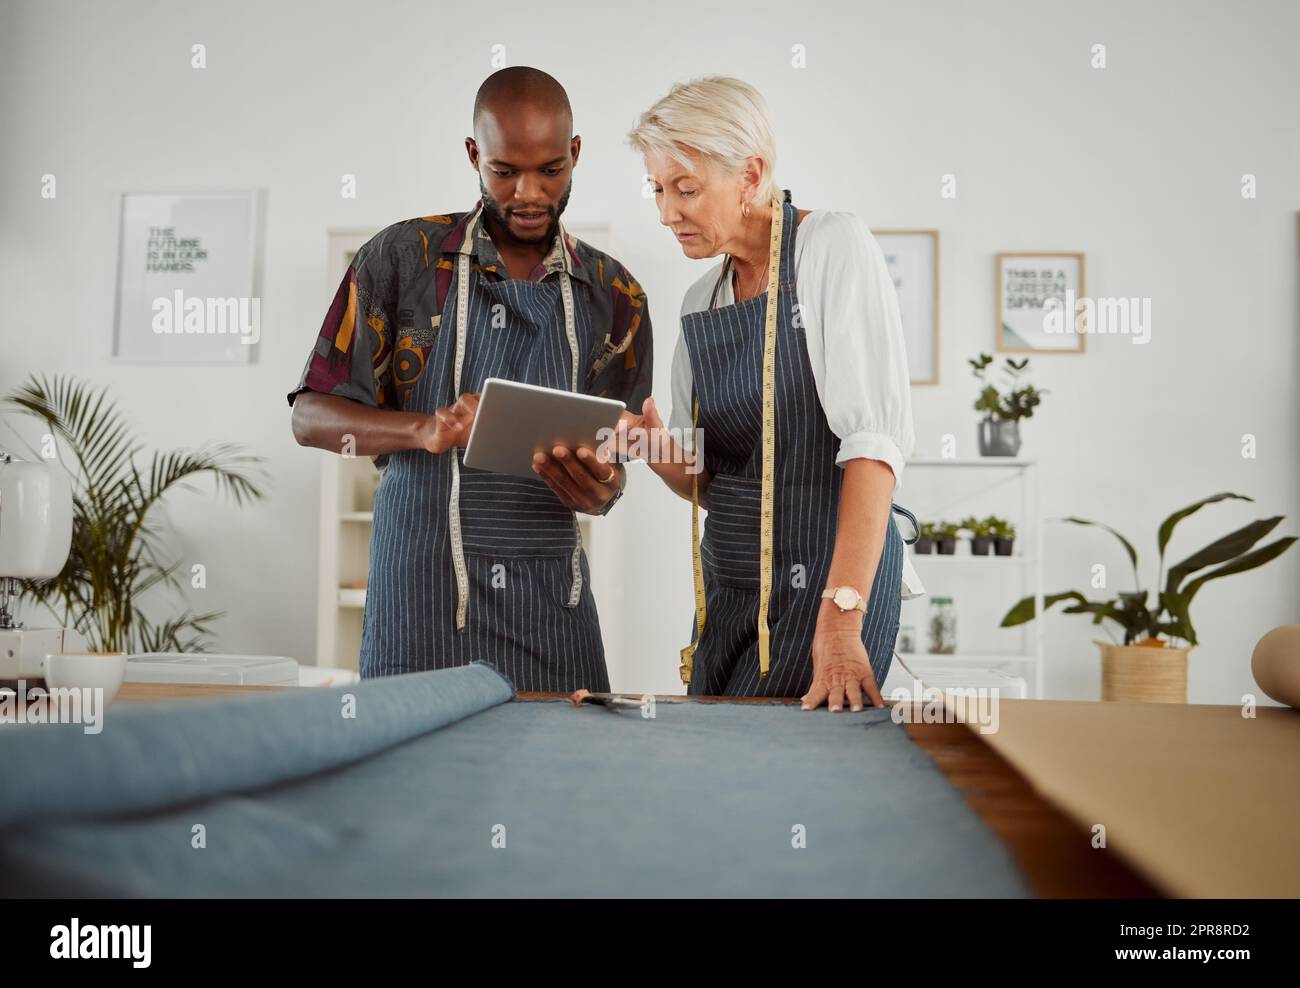 Zwei Bekleidungsdesigner, die ein digitales Tablet verwenden, während sie mit Material arbeiten. Junger afroamerikanischer Schneider, der mit einer Kaukasierin zusammenarbeitet und ein digitales Tablet in der Hand hält Stockfoto